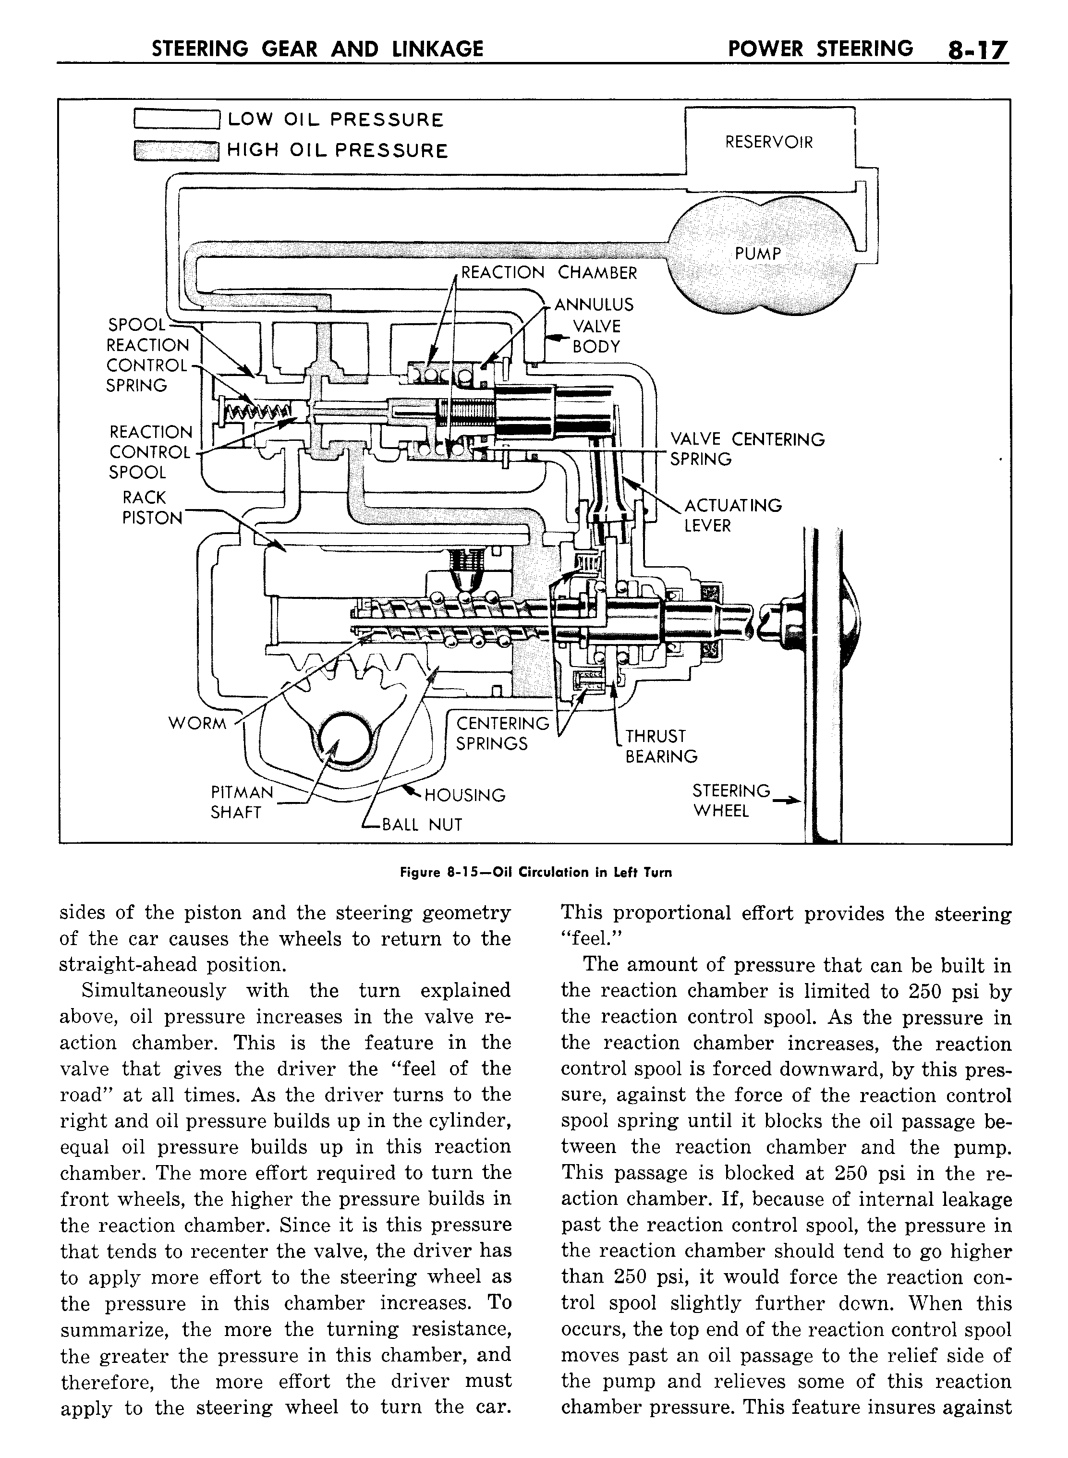 n_09 1957 Buick Shop Manual - Steering-017-017.jpg